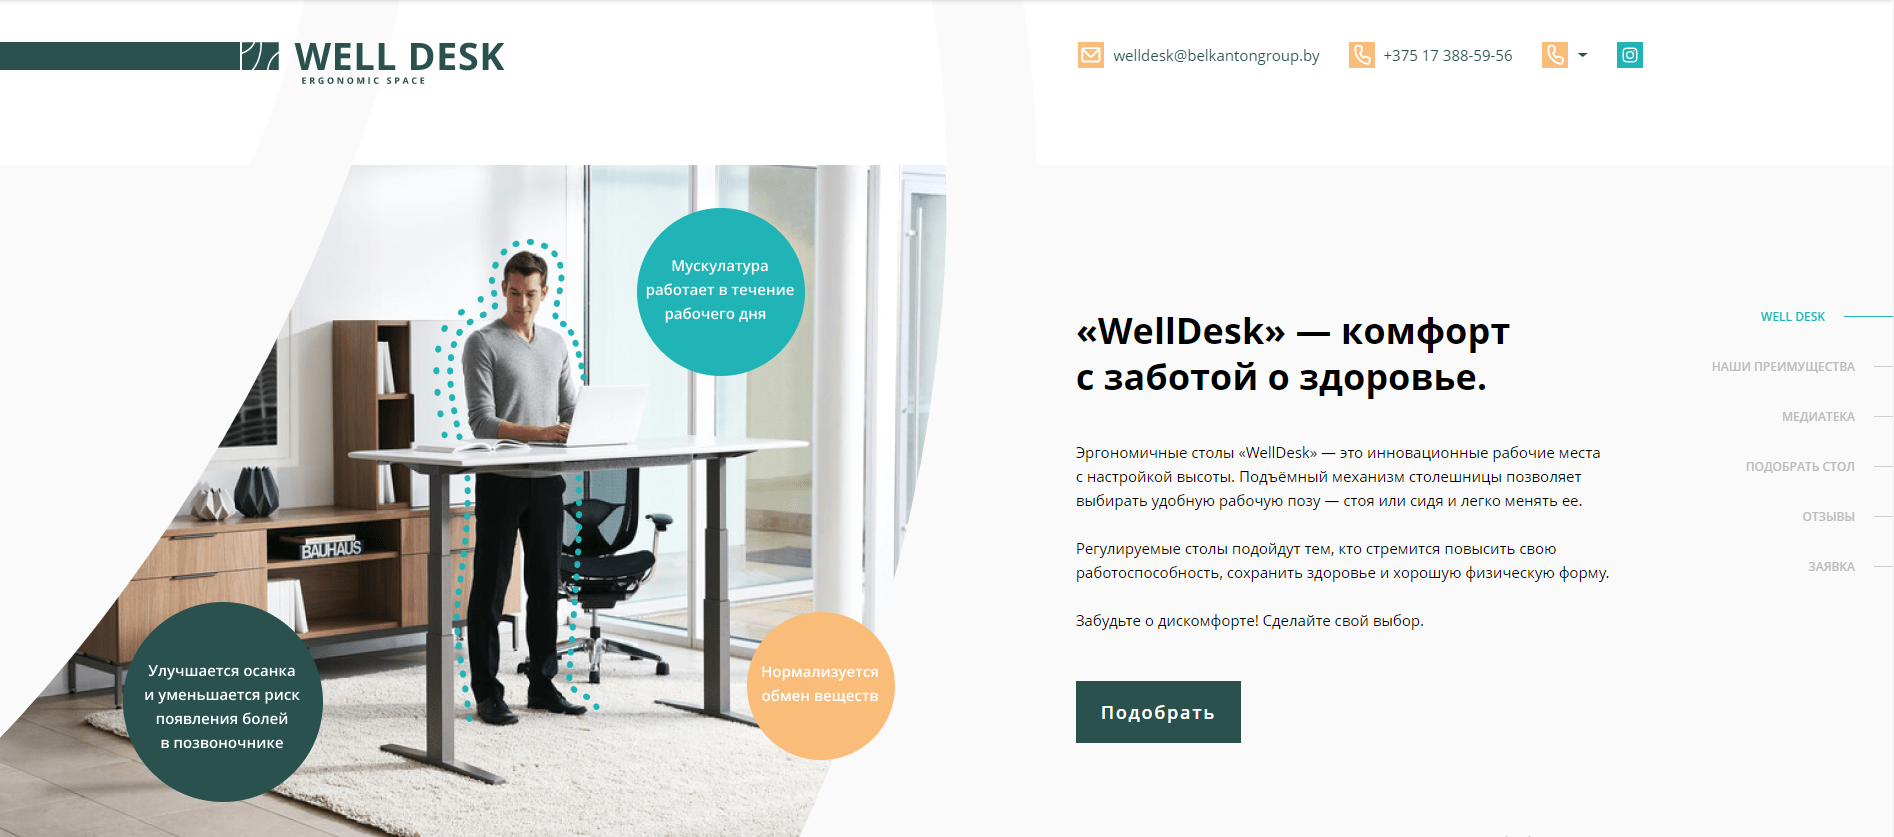 «welldesk» — комфорт с заботой о здоровье